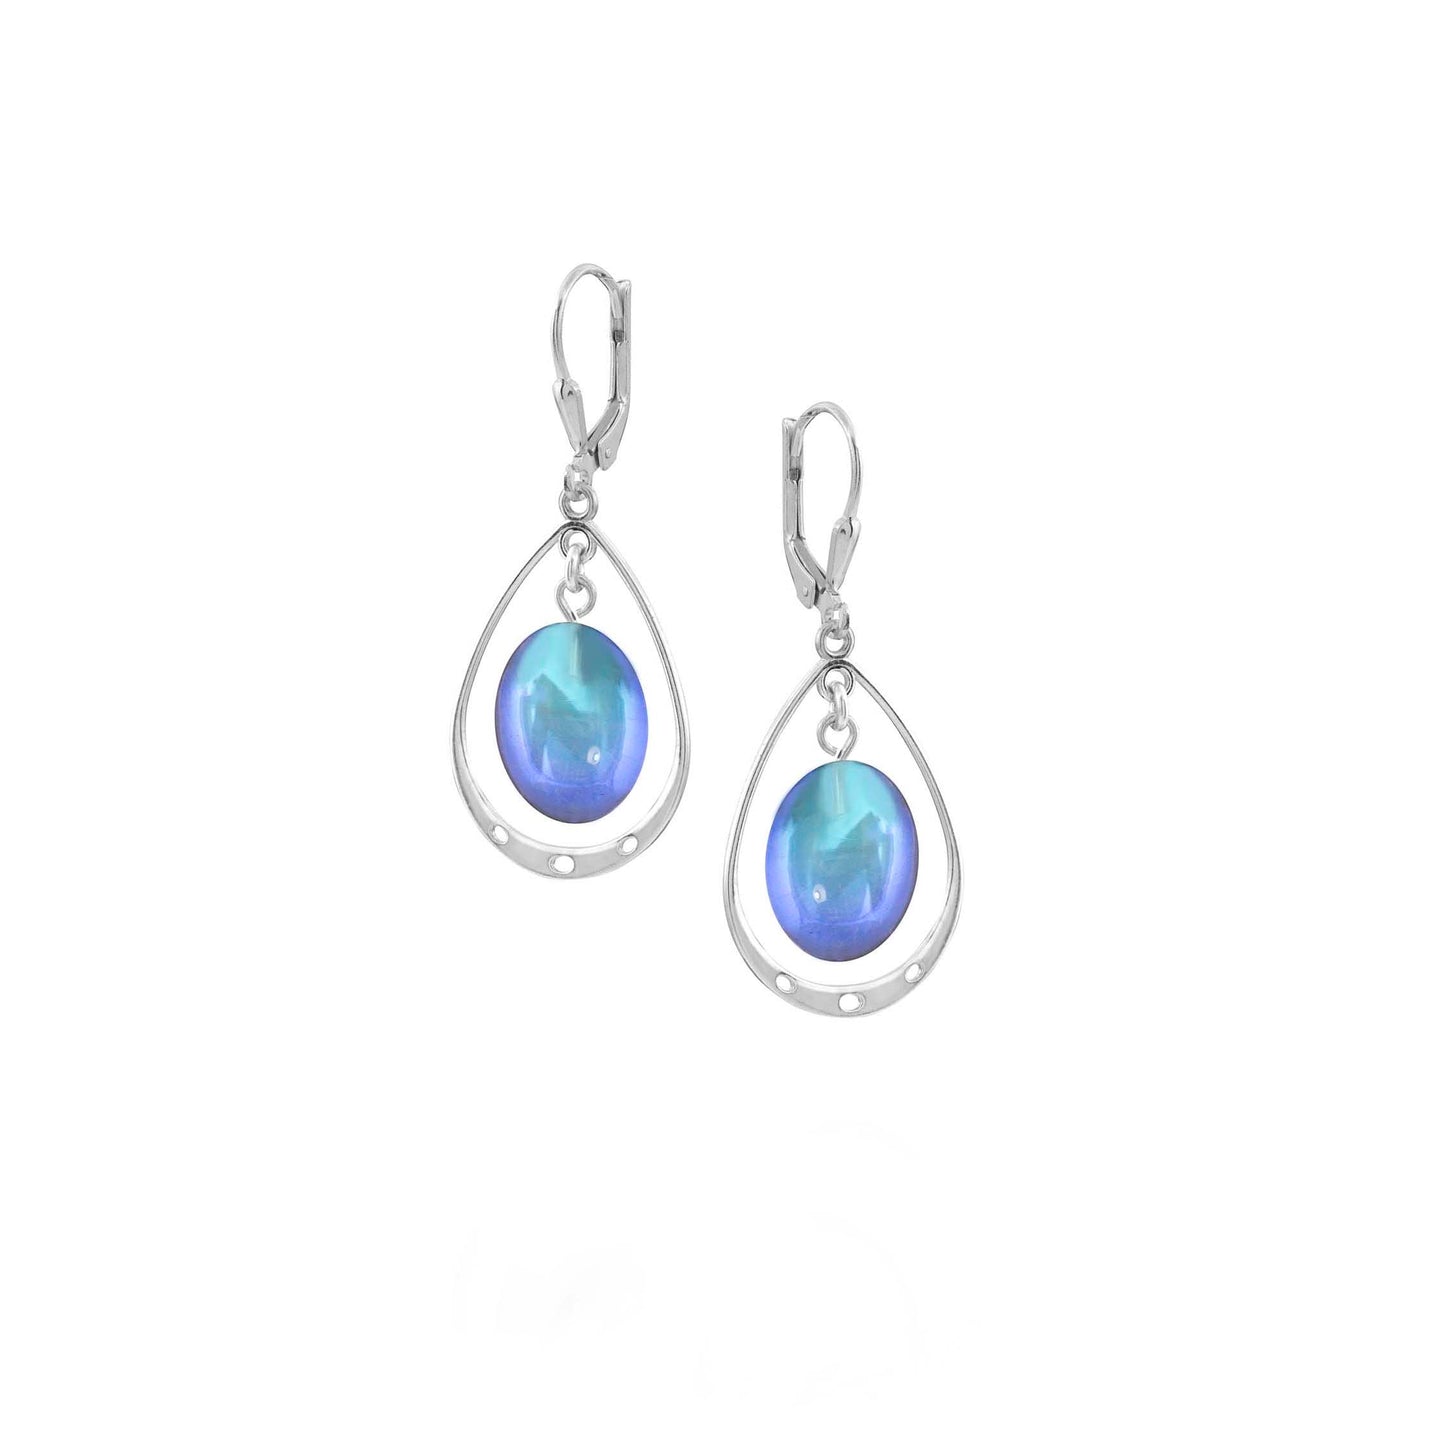 Oval Crystal Earrings with Sterling Silver Loop